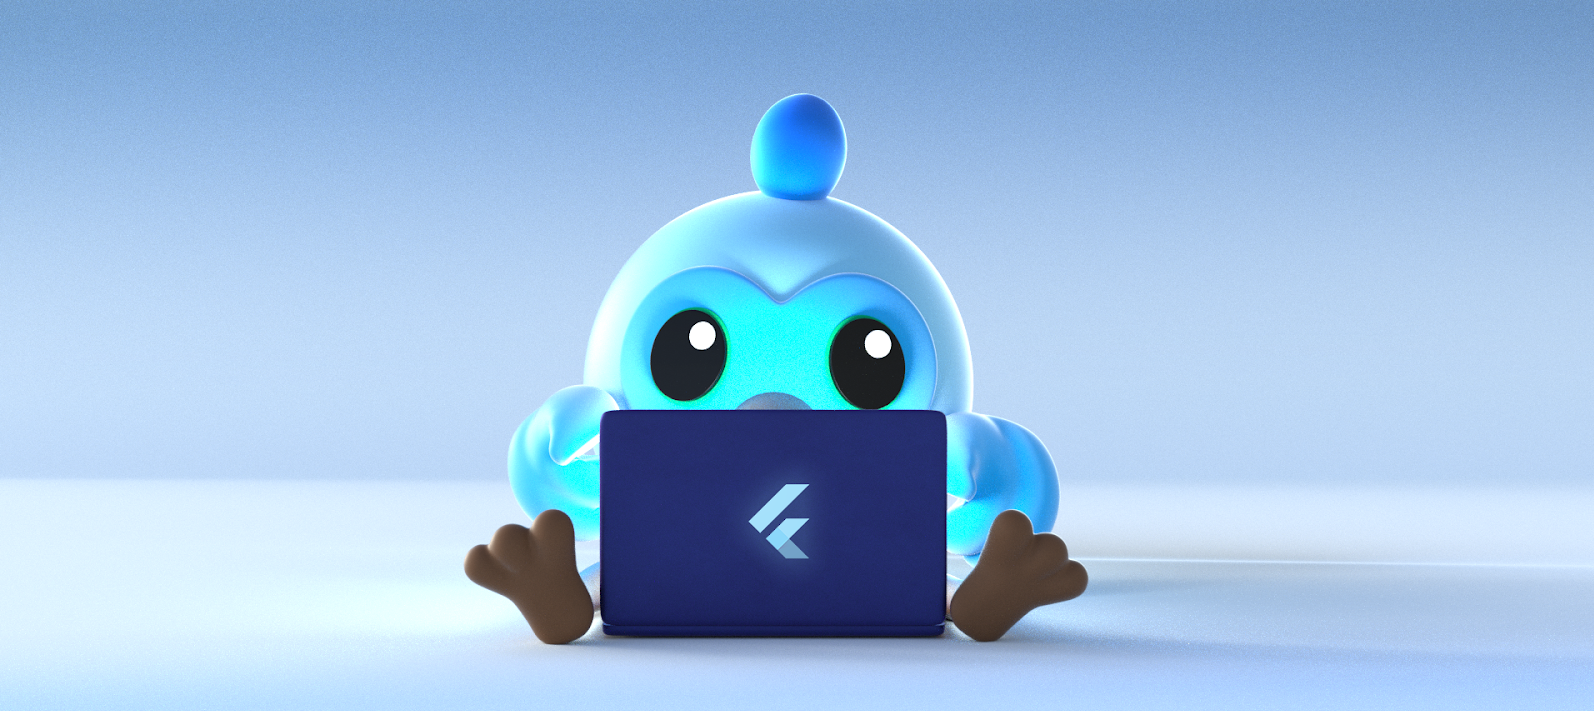 Flutter mascot, 'Dash' using a laptop computer.